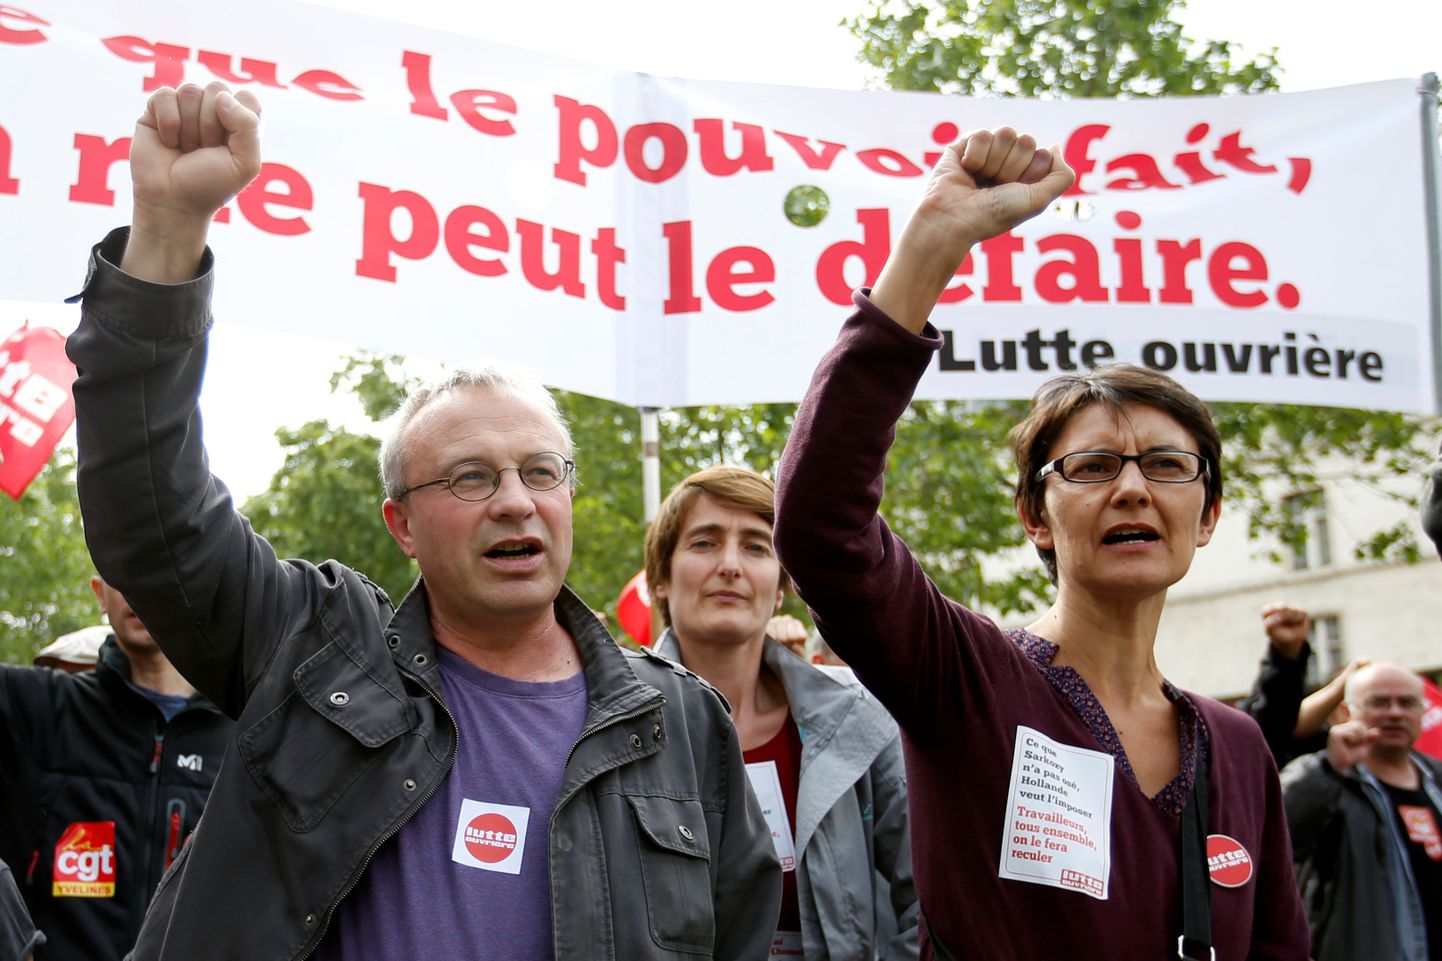 Протест во Франции против реформы трудового законодательства.